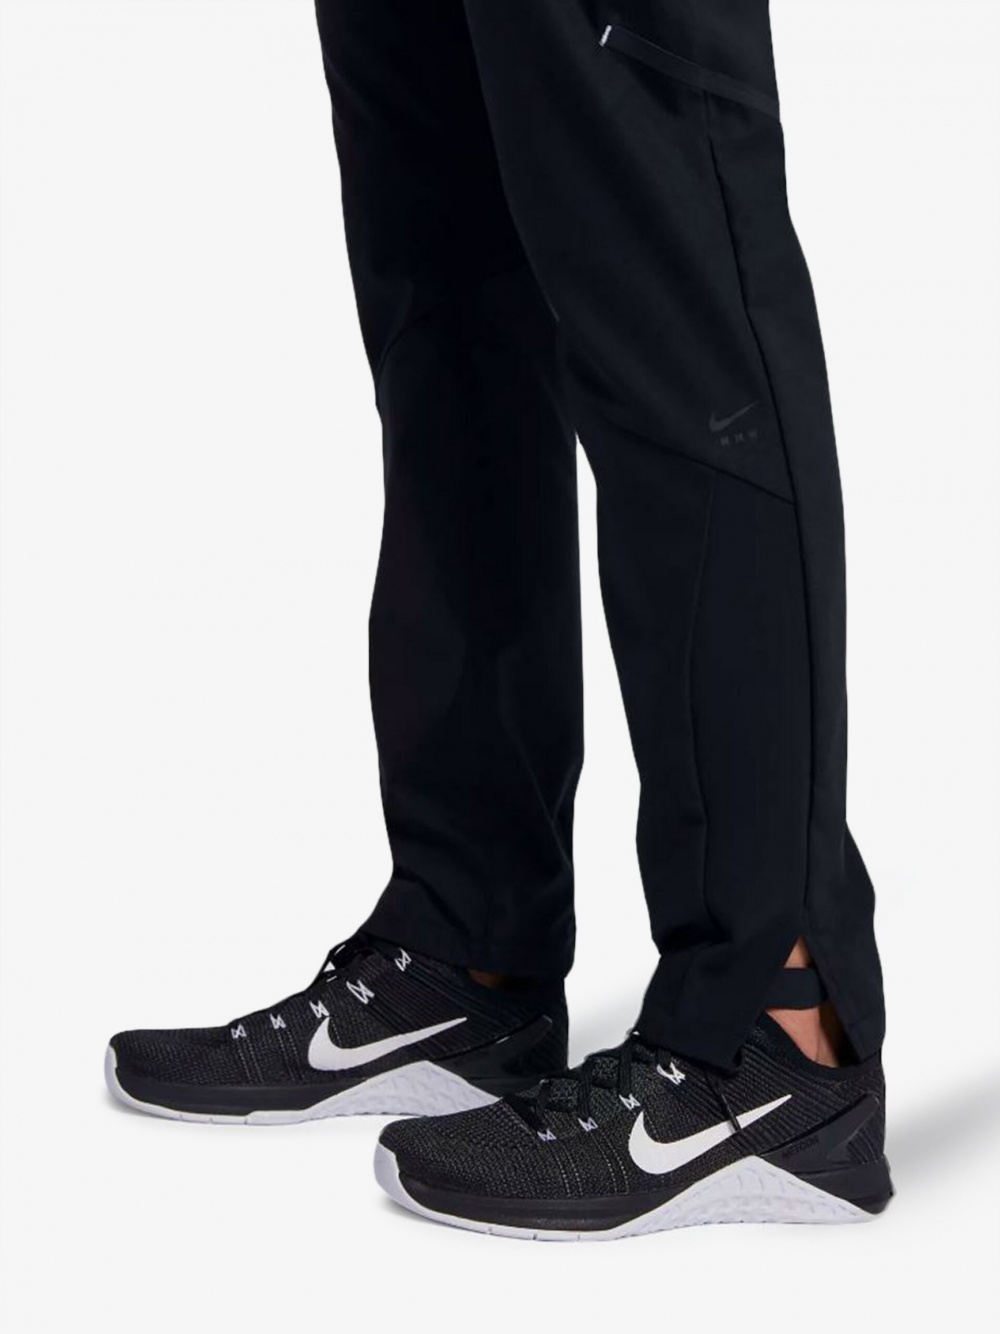 Спортивные брюки NikeLab x MMW, XS